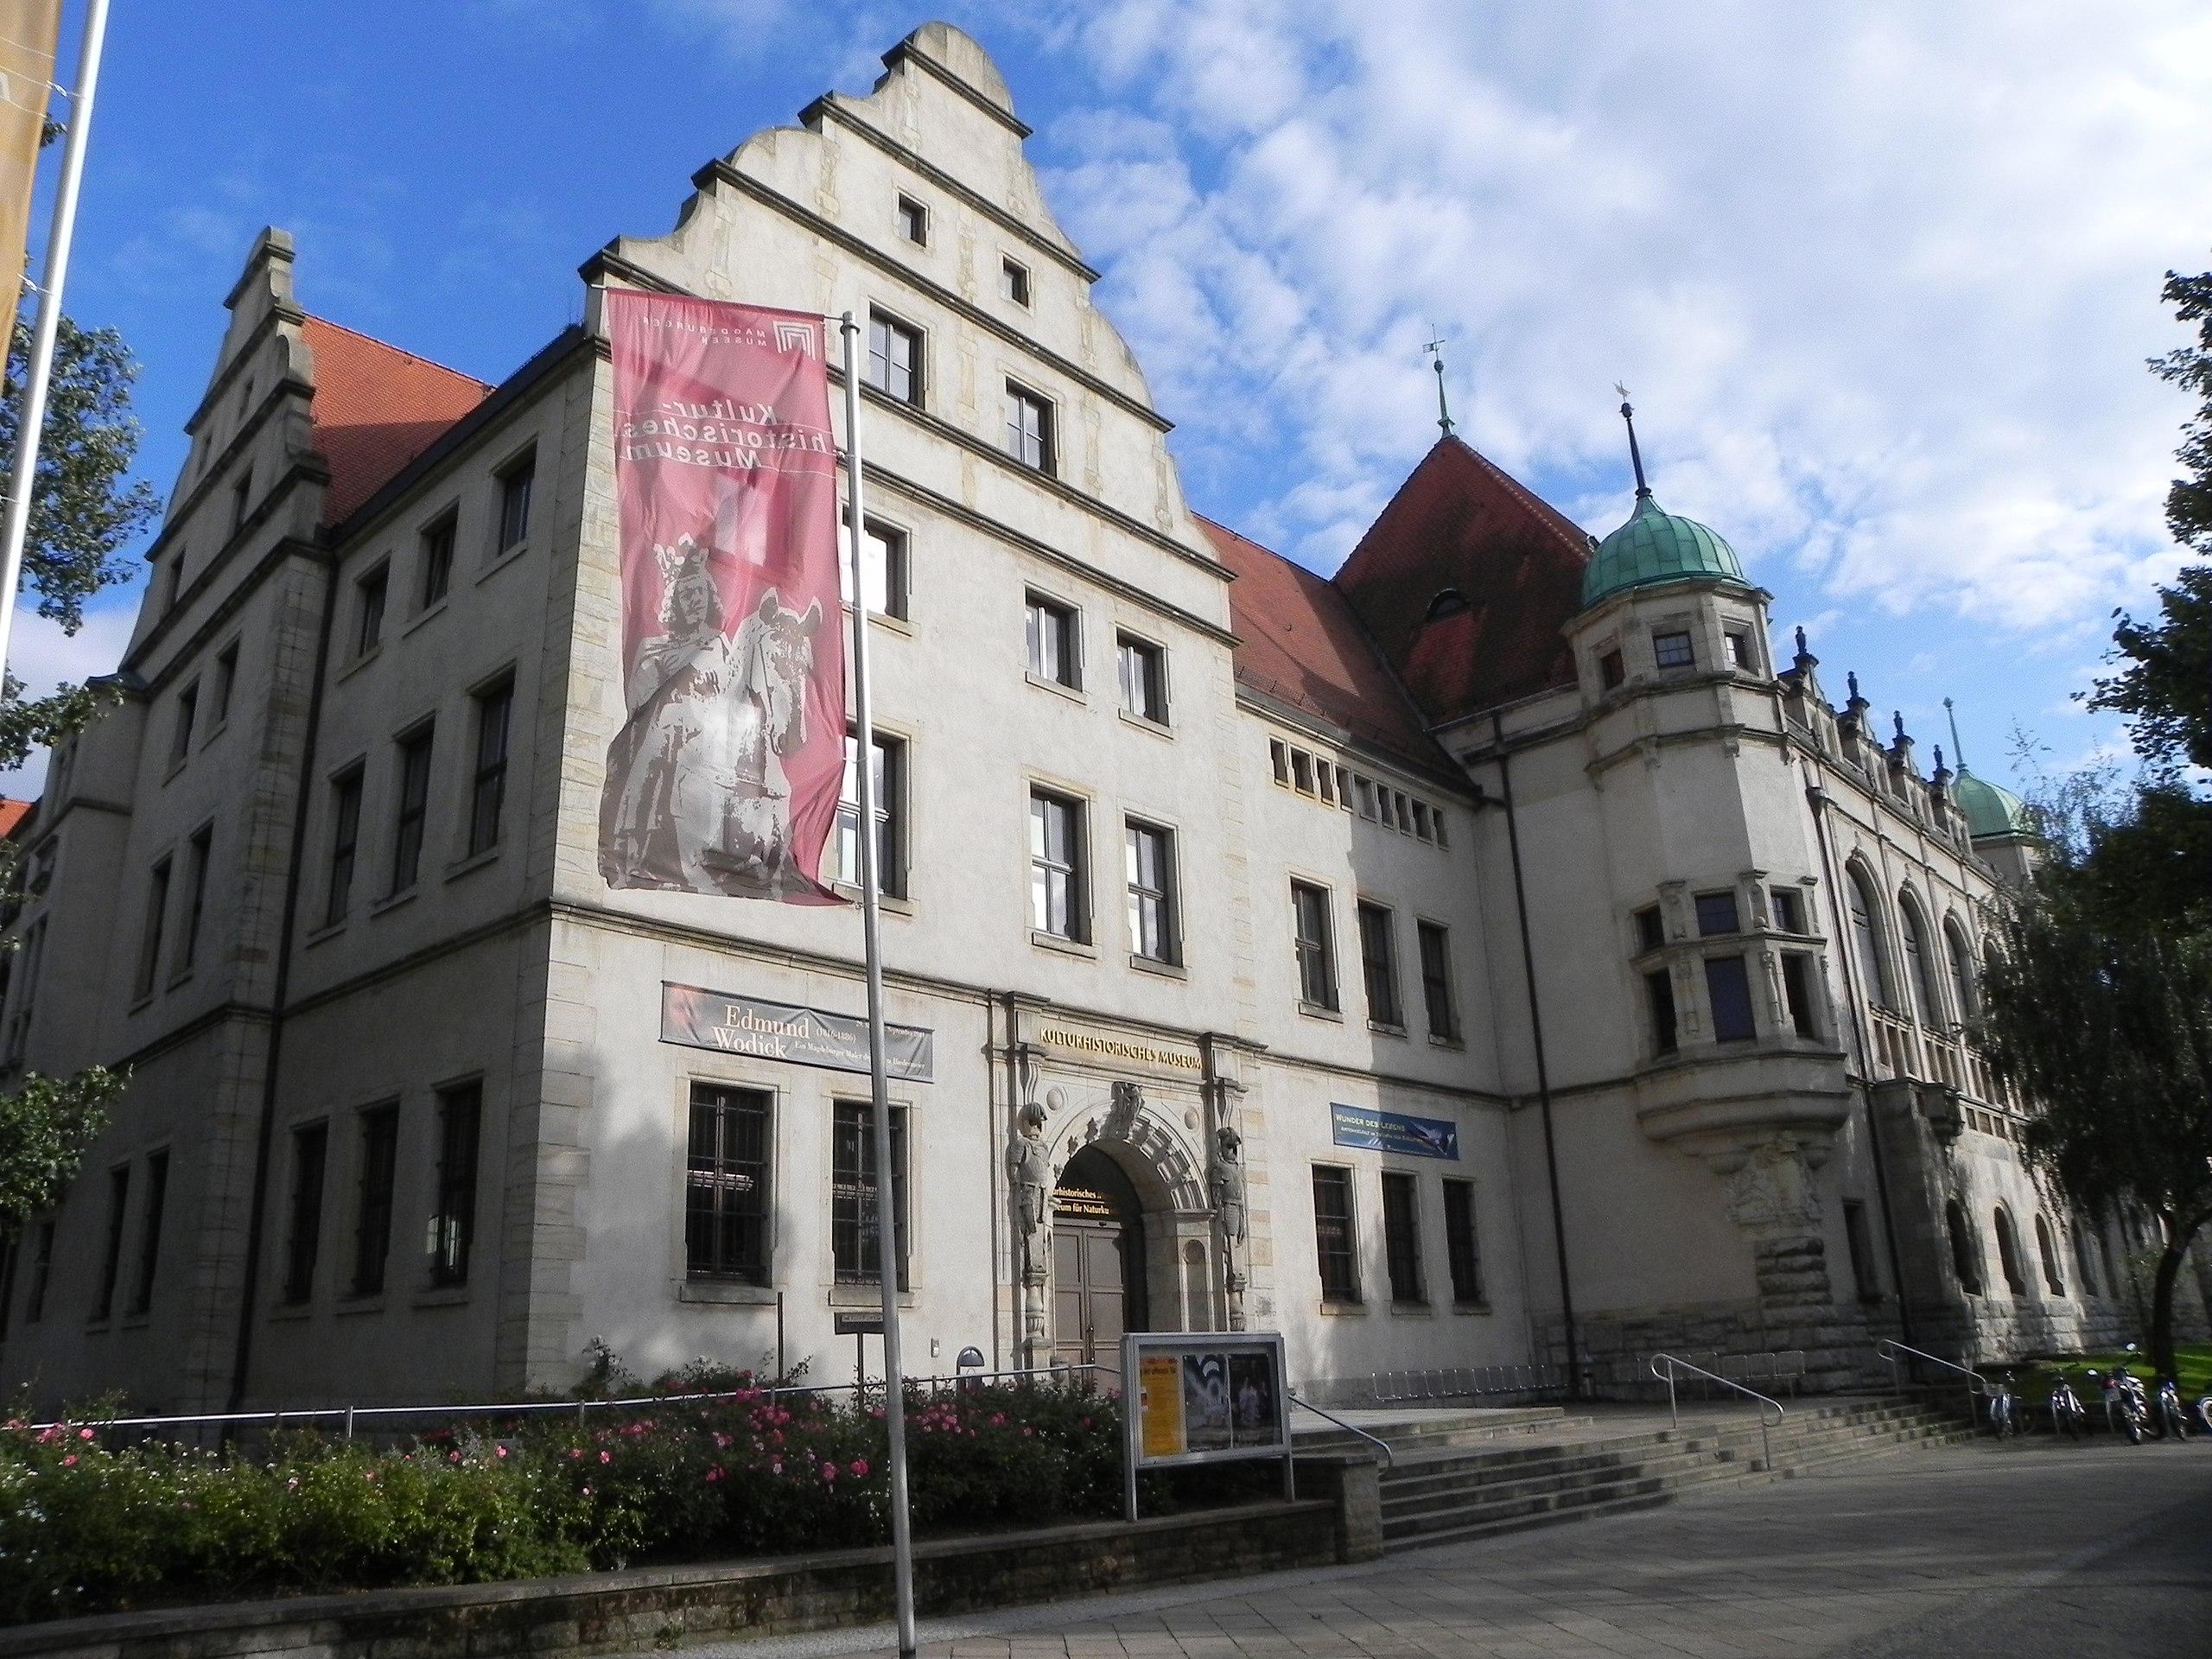 Μαγδεβούργο - Μουσείο Πολιτιστικής Ιστορίας του Μαγδεβούργουe06